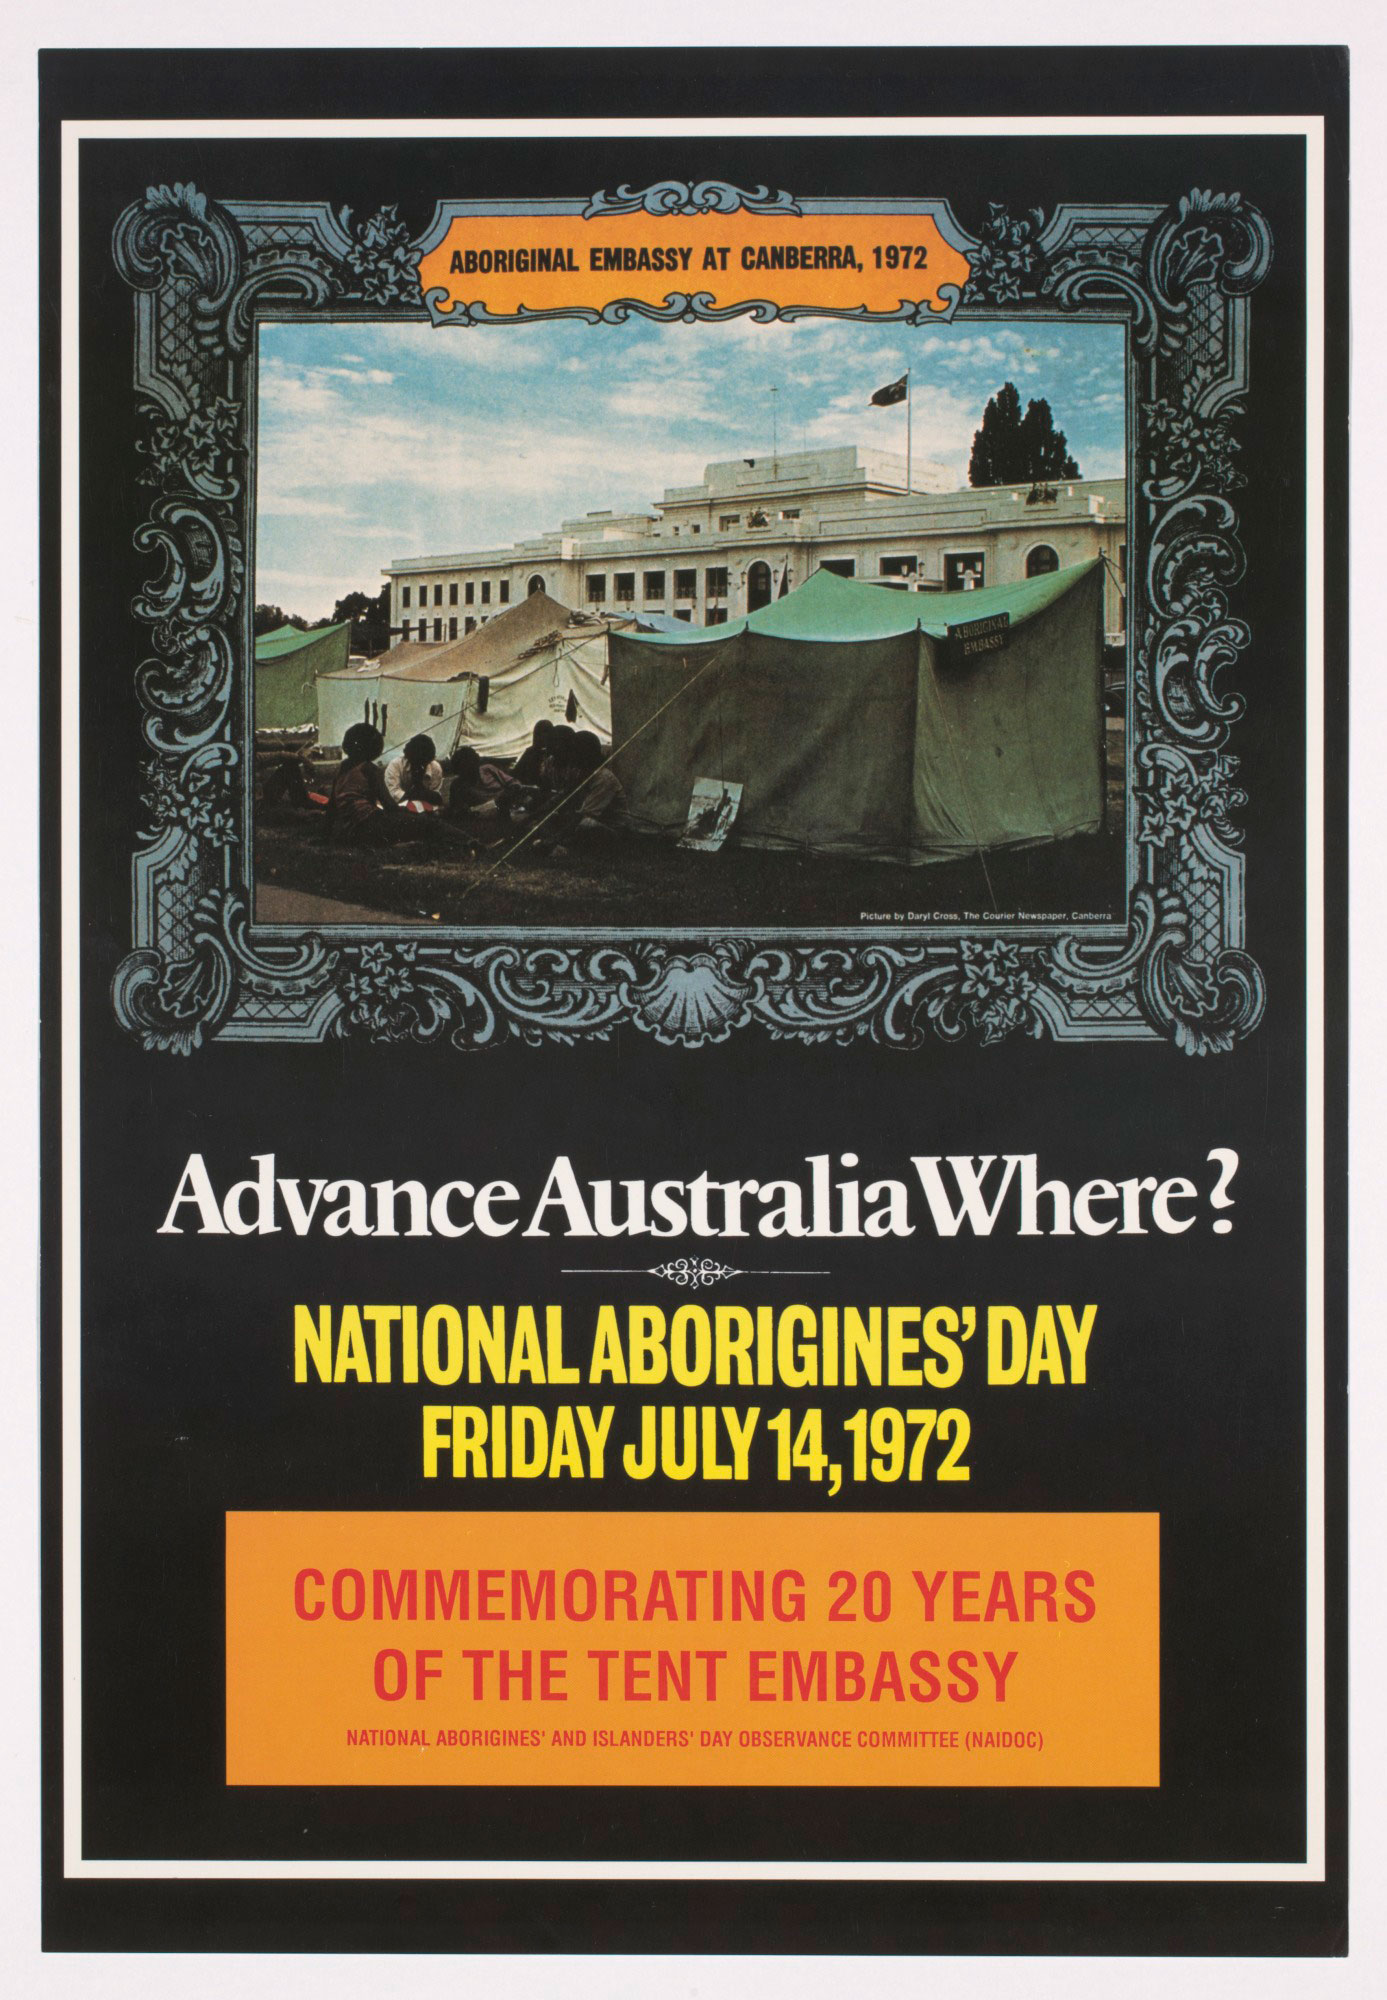 Poster titled ‘Advance Australia Where?’.